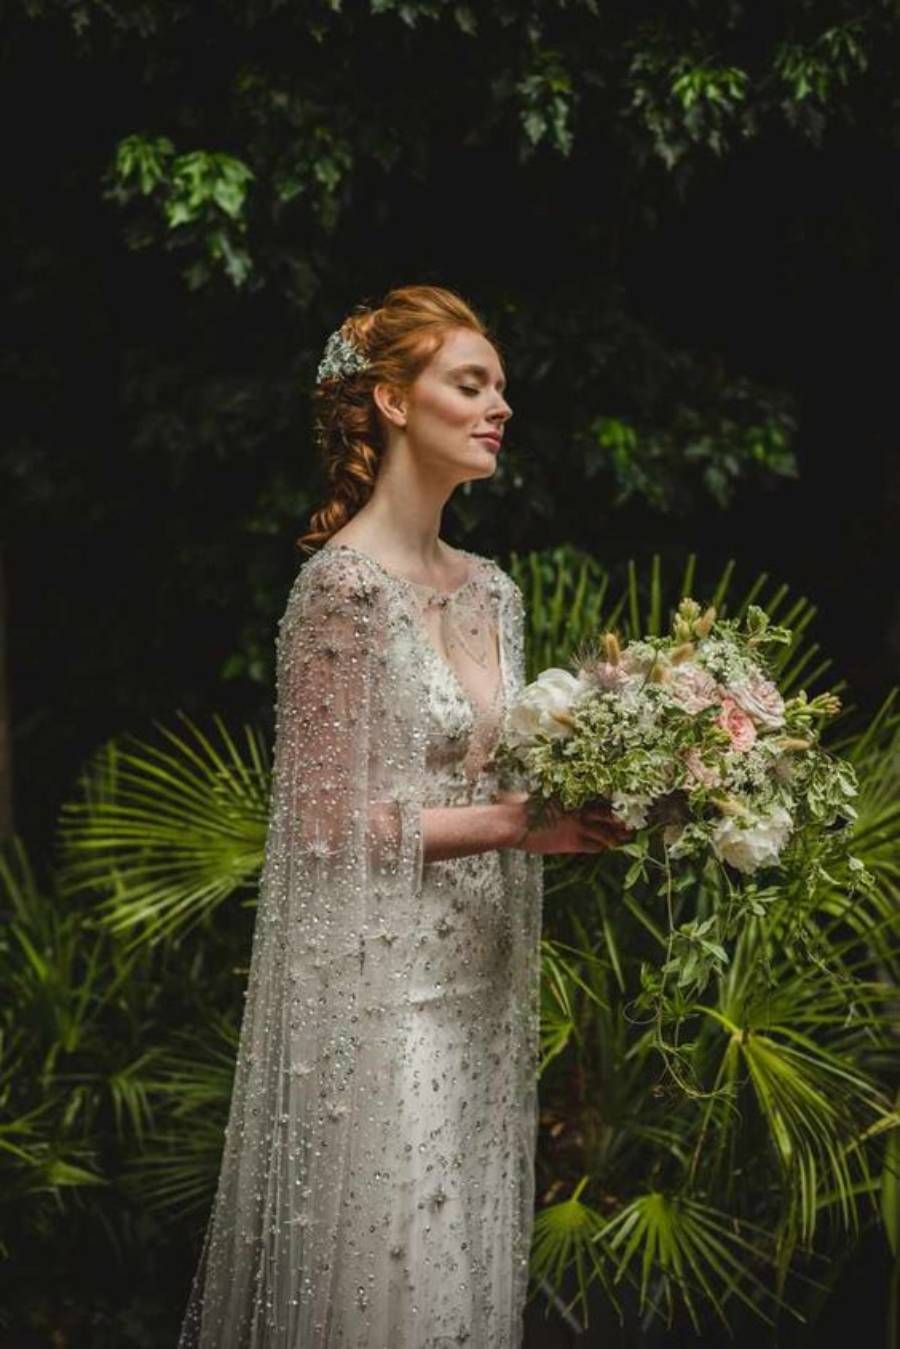 Vestido de novia de inspiración en bosques encantados